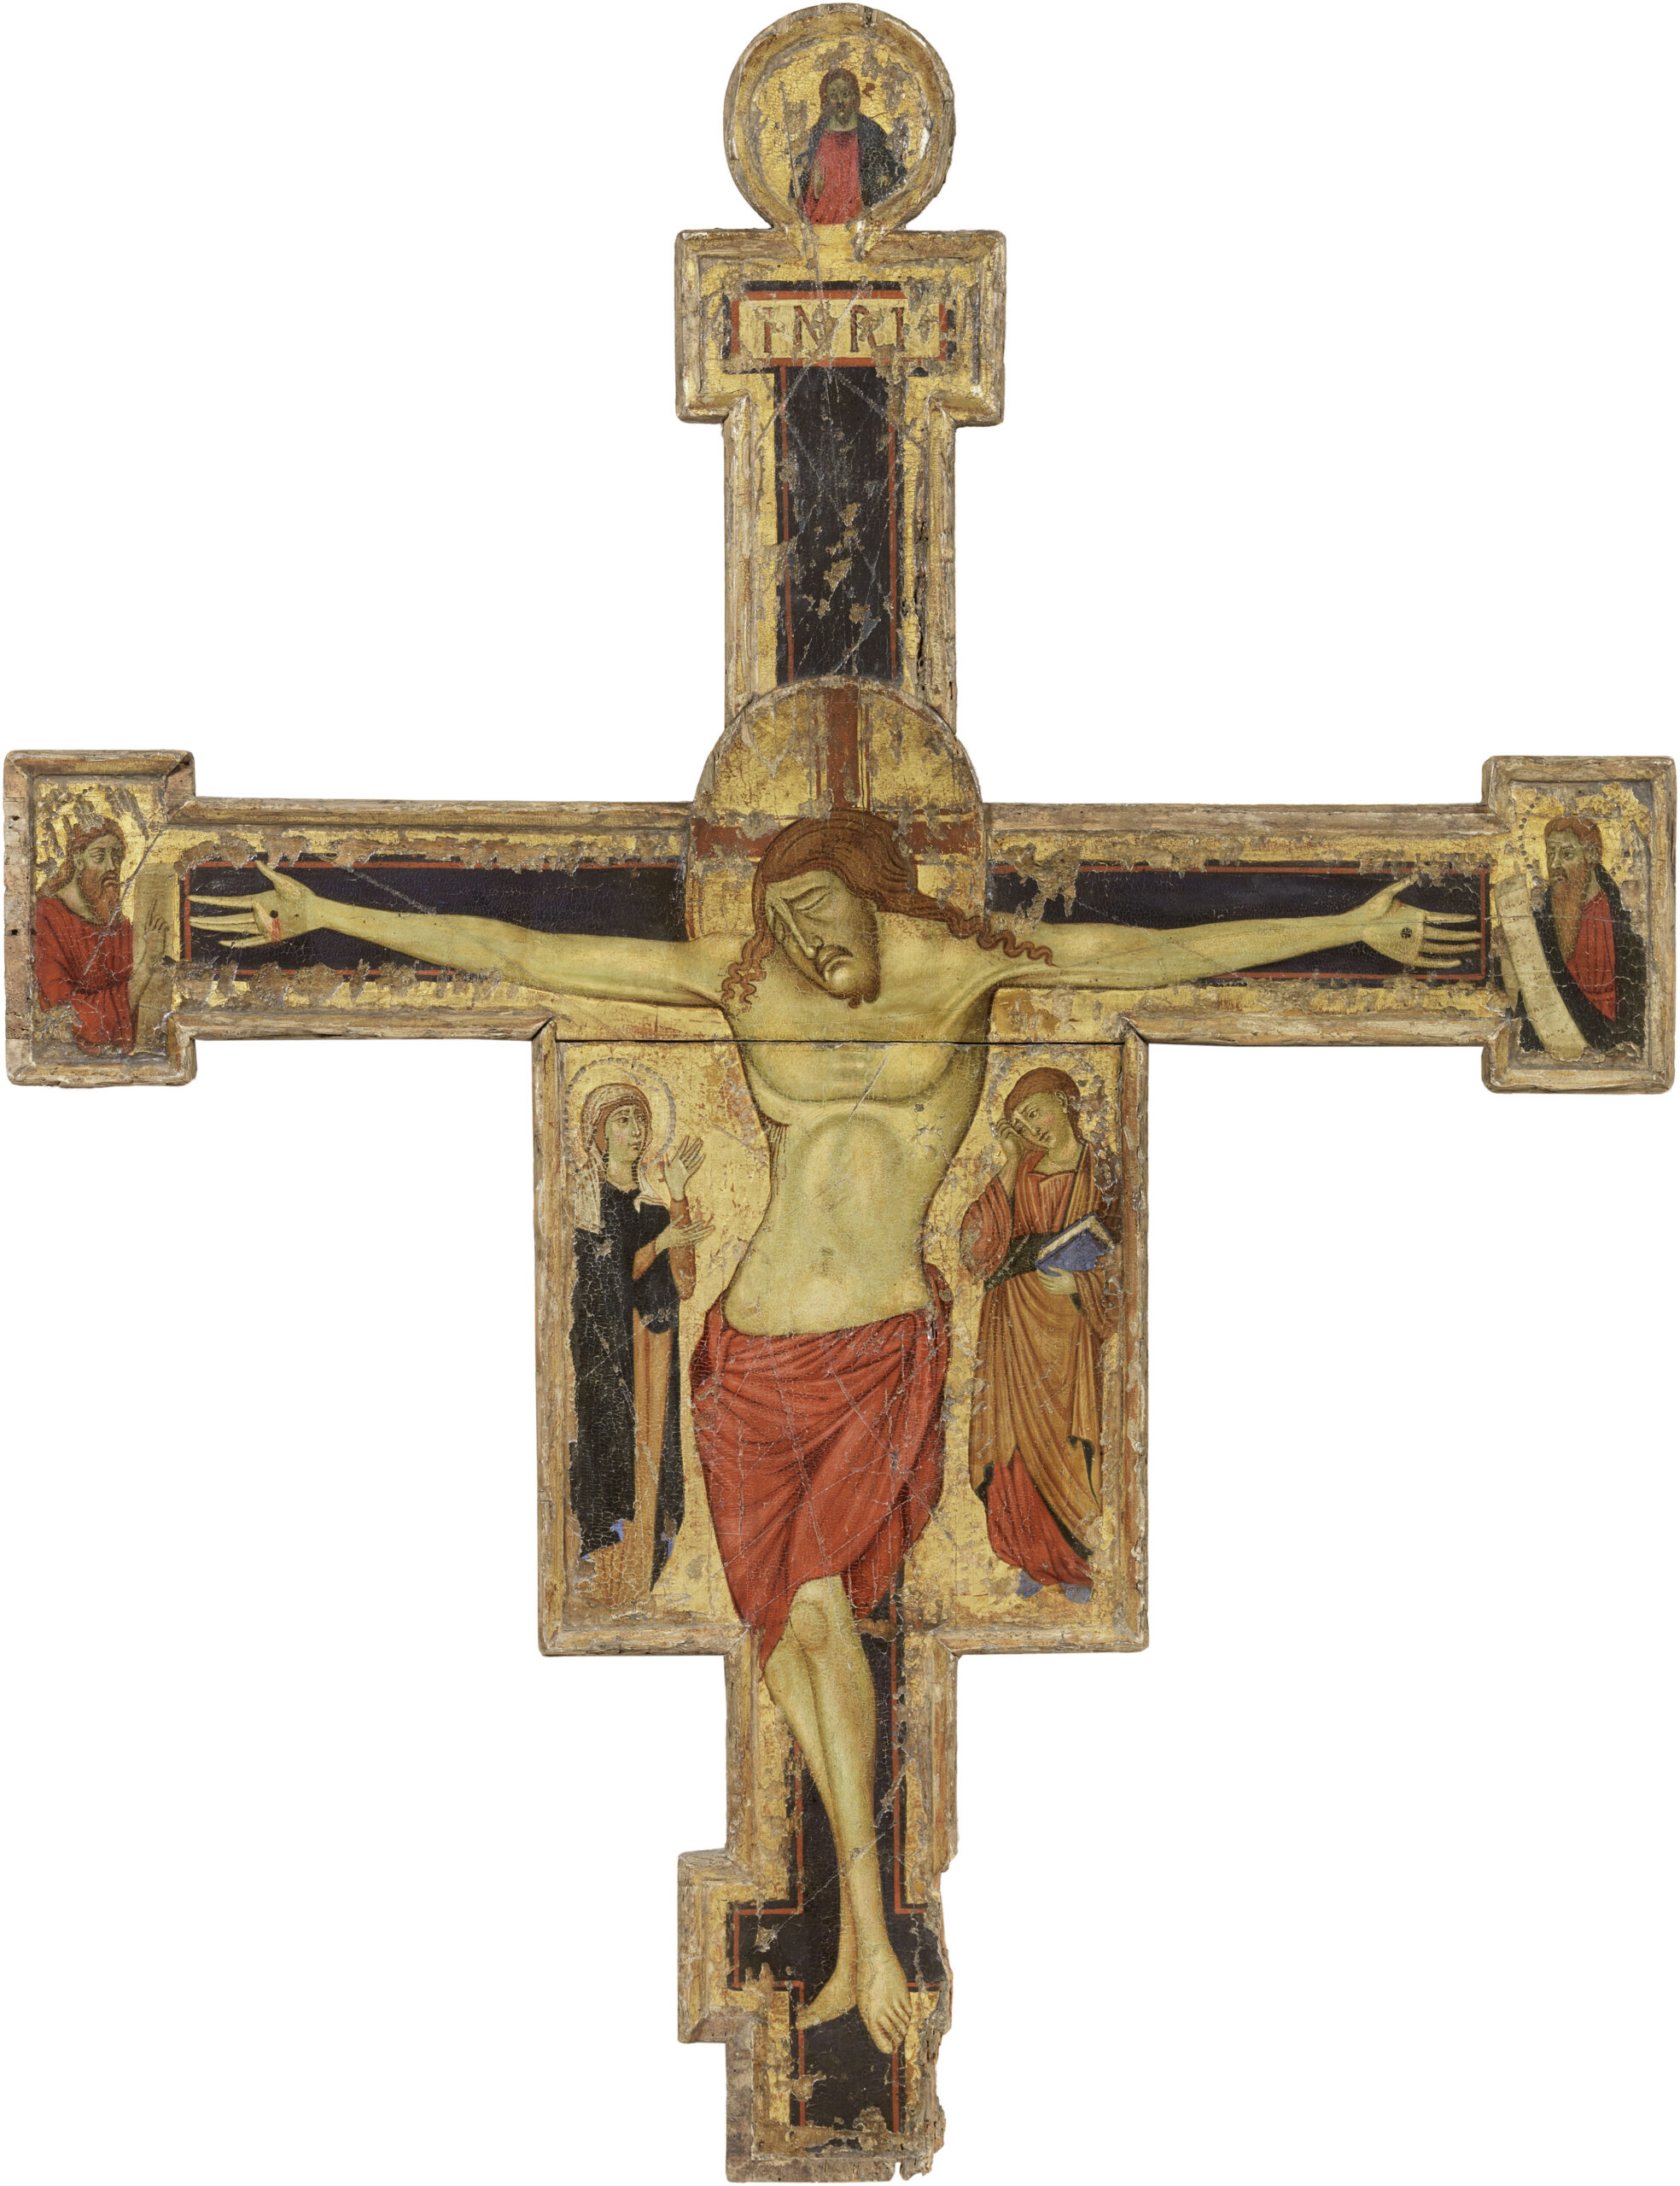 Lotto 131, Scuola toscana fine XIII - inizio XIV secolo Crocifisso - Christus Patiens, Madonna e San Giovanni dolenti, cm 115,5x88,5